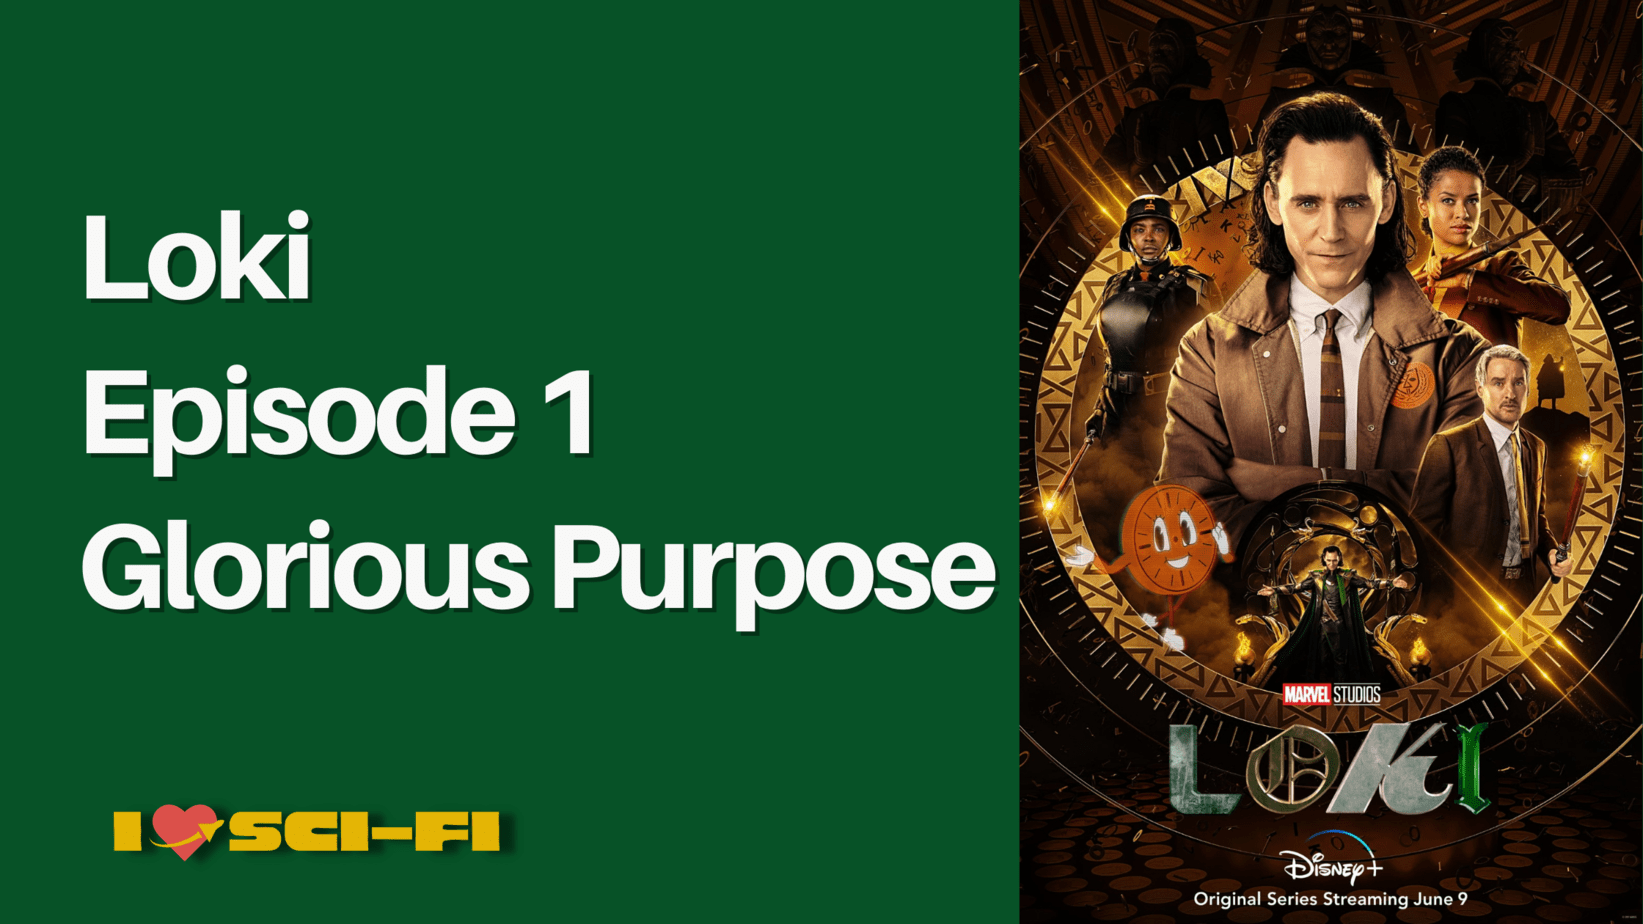 loki season 1 episode 1 glorious purpose